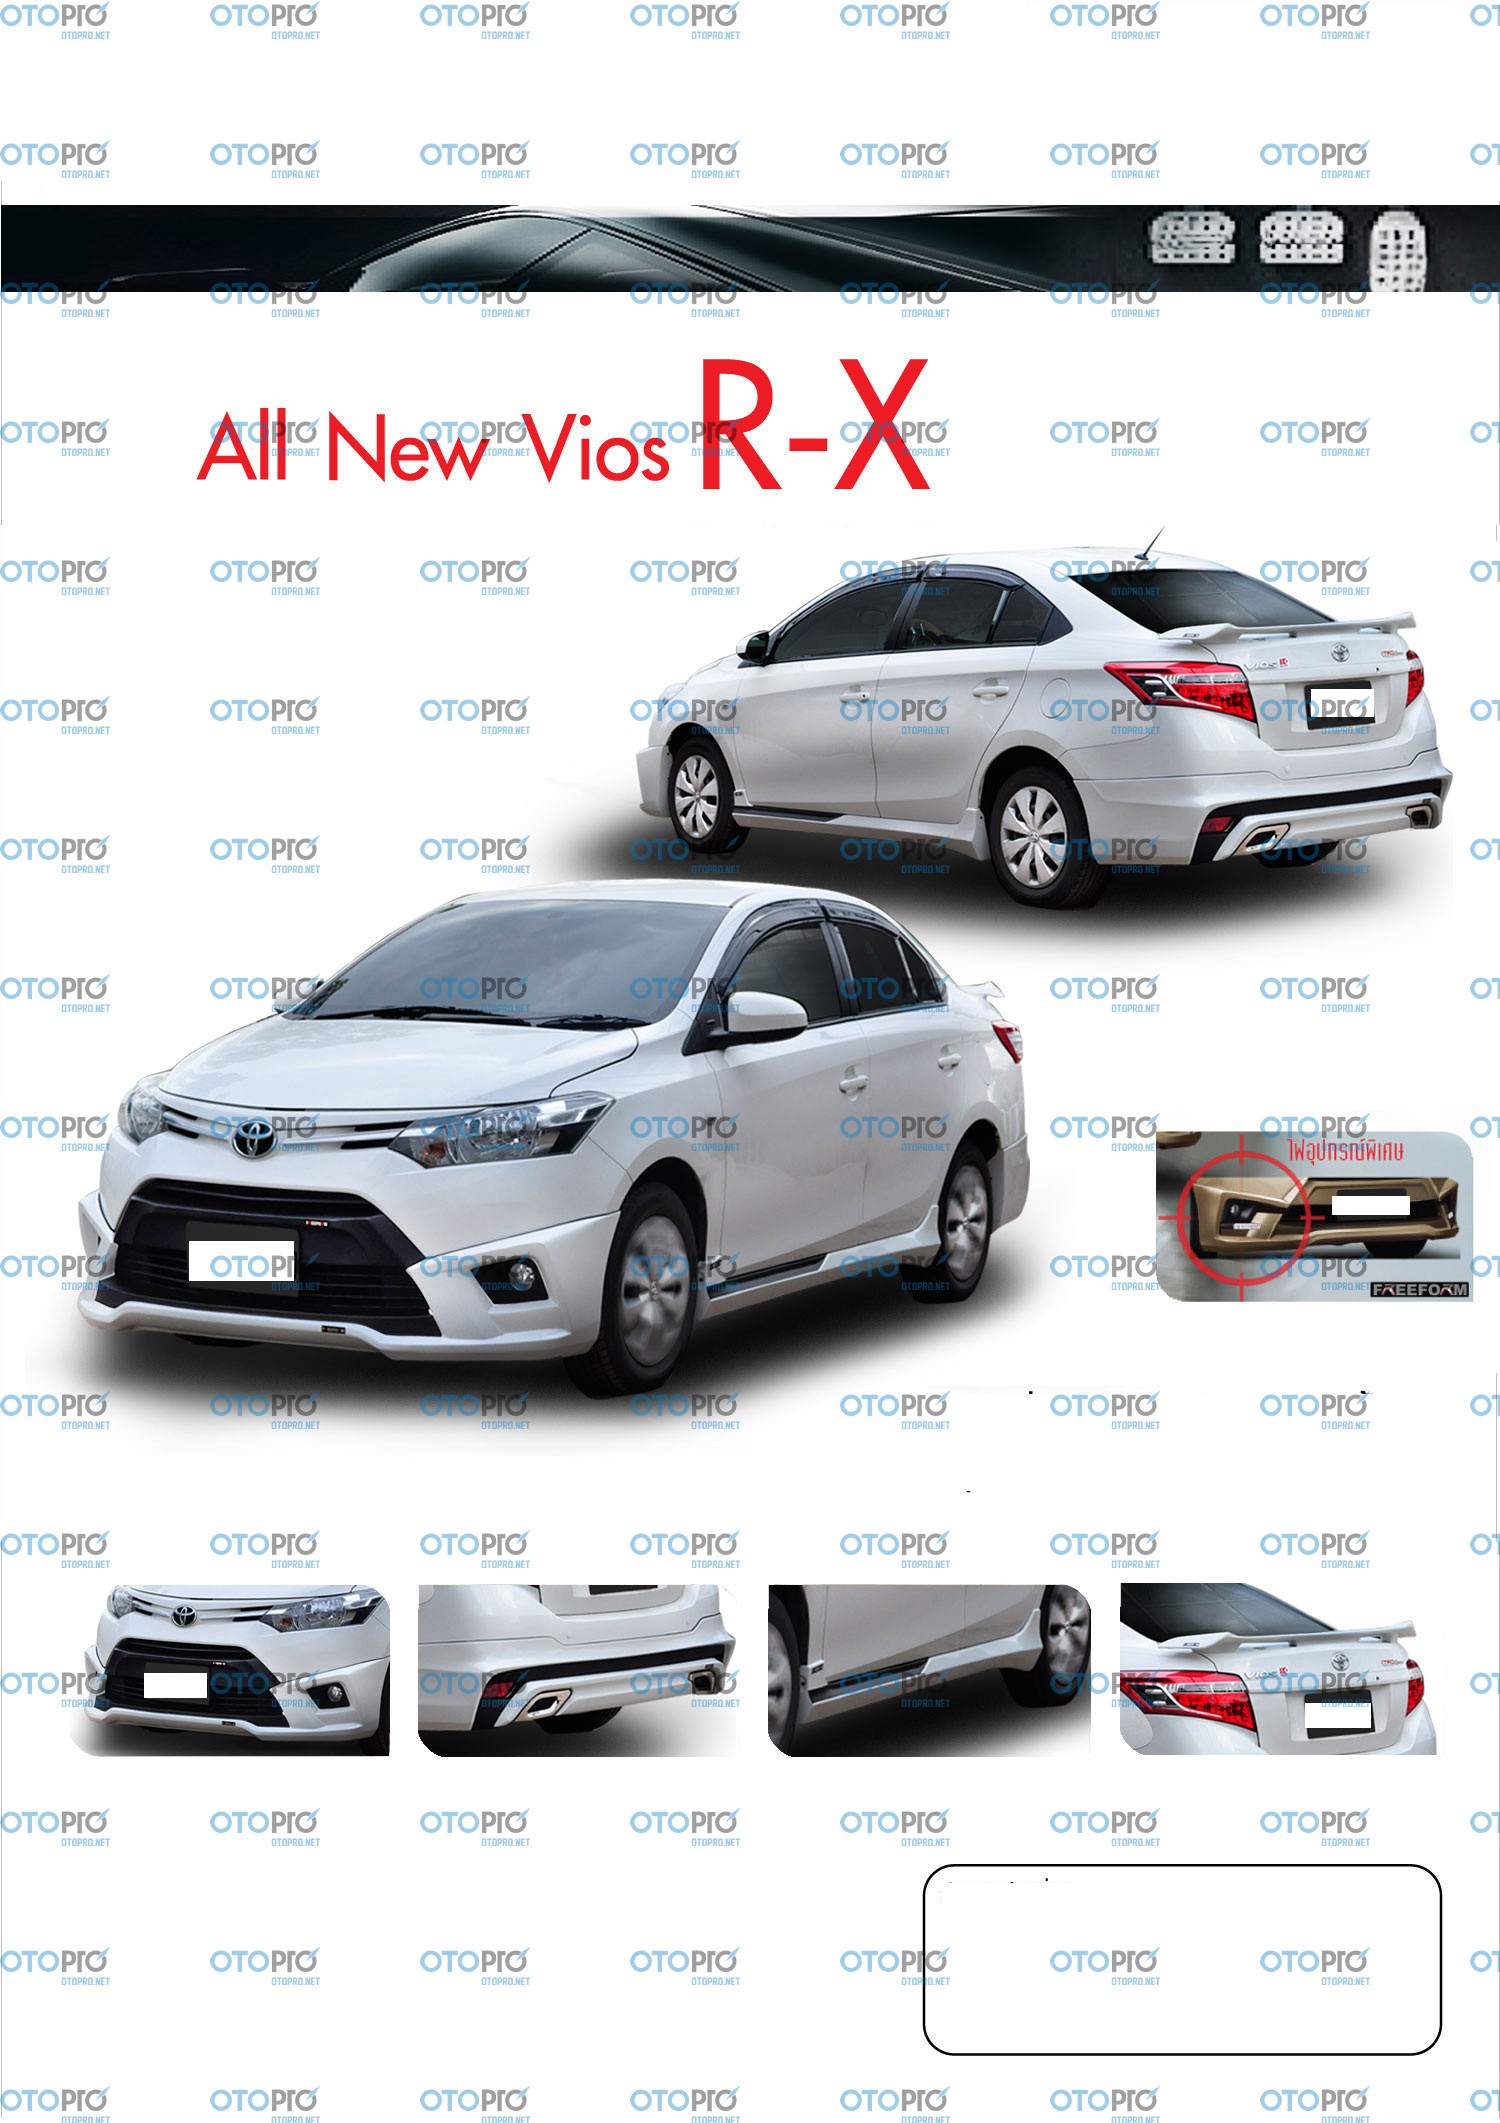 Bodylip cho Vios 2014-2016 mẫu RX nhập khẩu Đài Loan